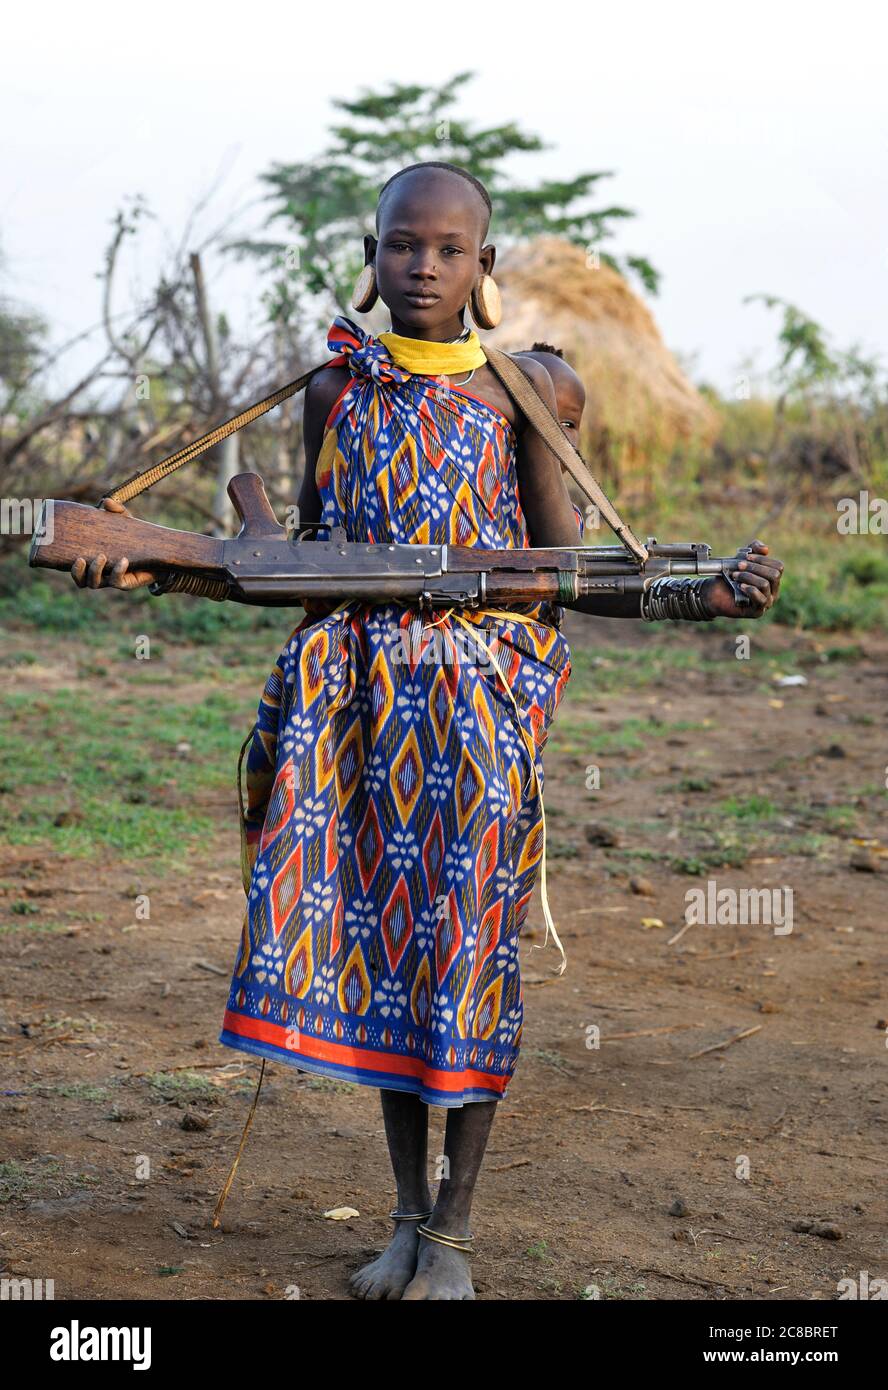 Äthiopien - Afrika, Januar 03. 2014: Mädchen von Mursi Stamm mit Kind und Maschinengewehr, Mago Nationalpark, Äthiopien, Afrika Stockfoto